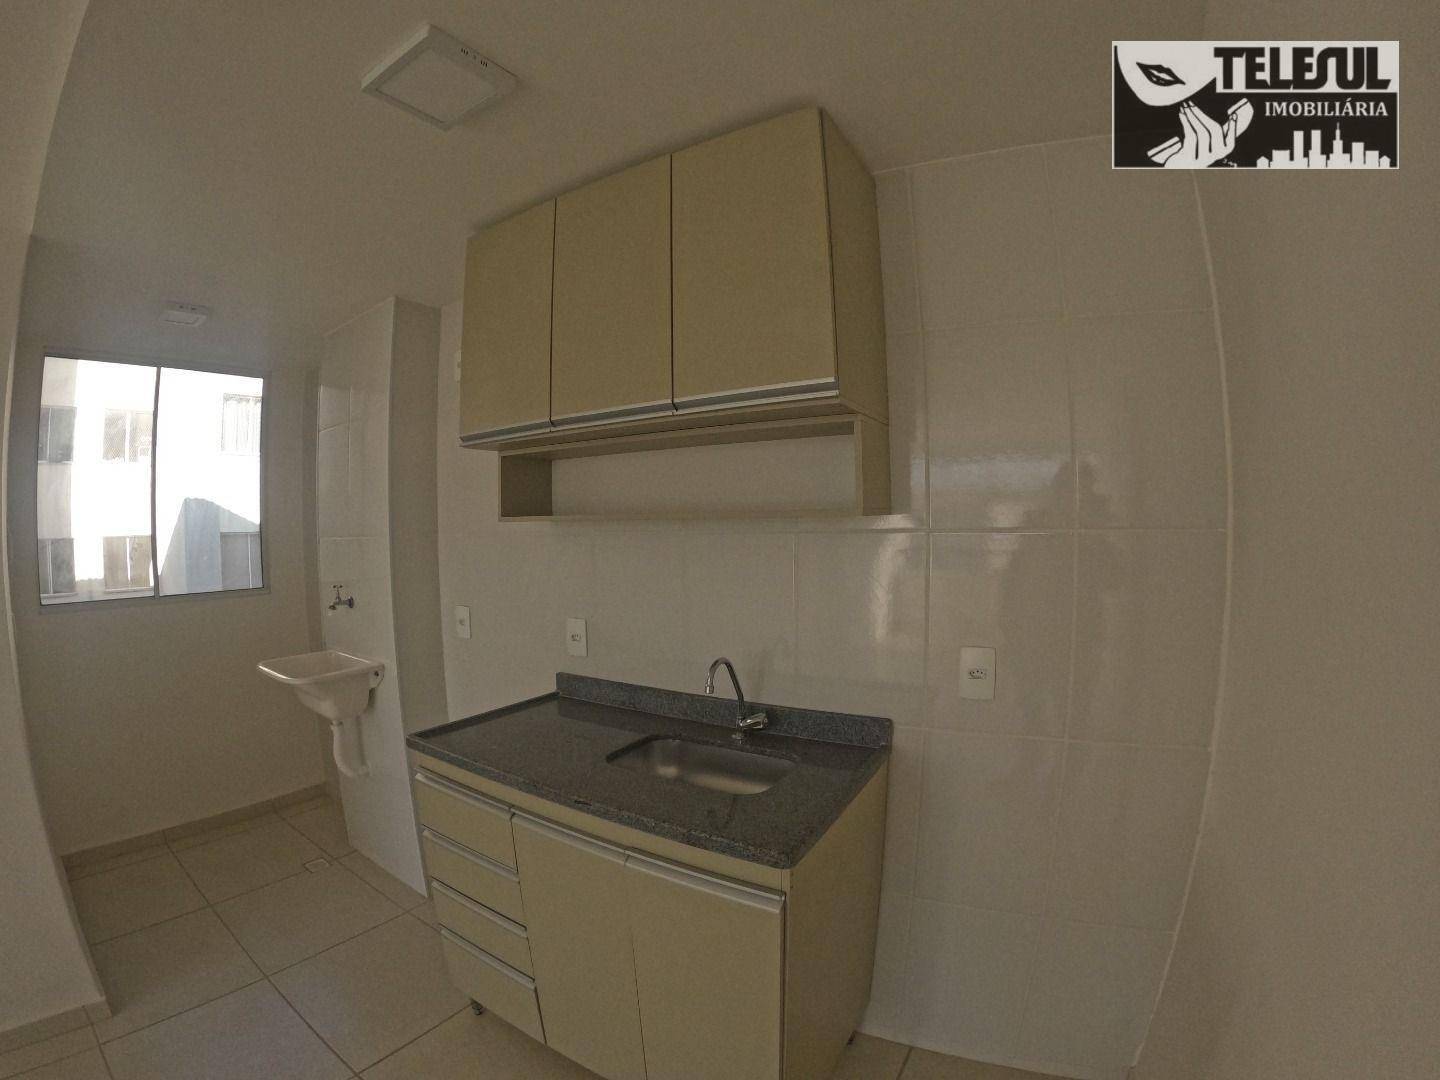 Apartamento, 2 quartos, 313 m² - Foto 3